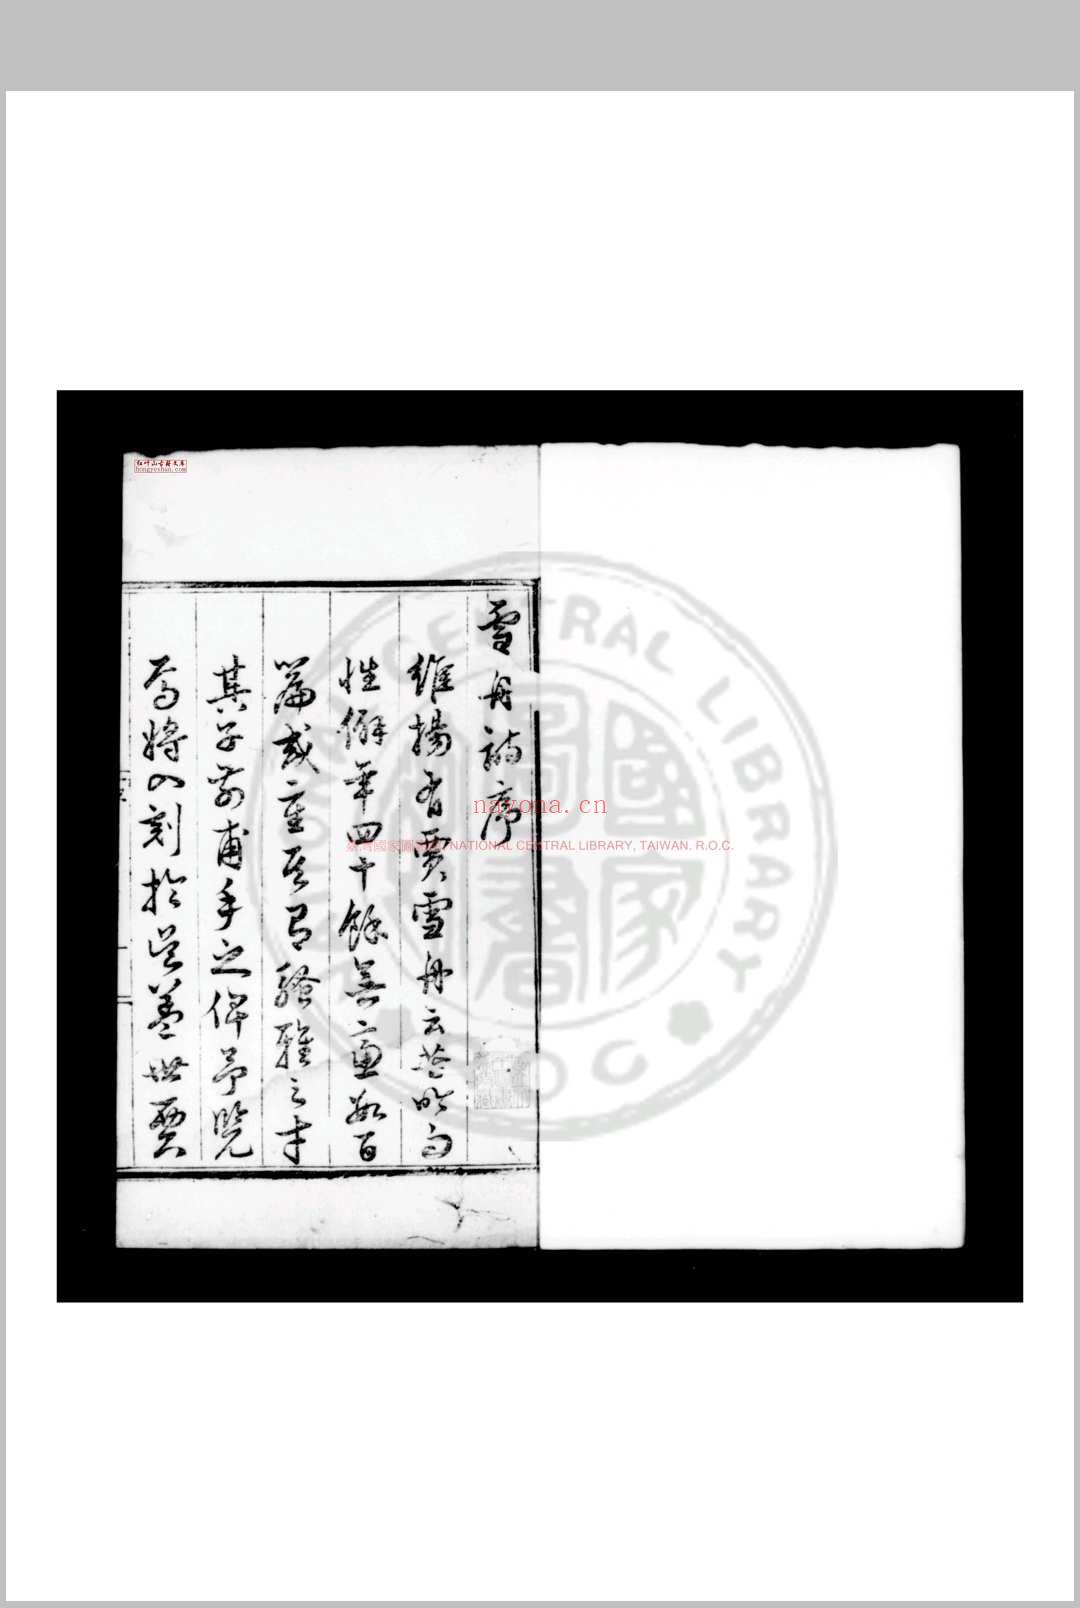 雪舟诗集 (明)贾雪舟撰 明嘉靖间(1522-1566)维扬贾氏家刊本